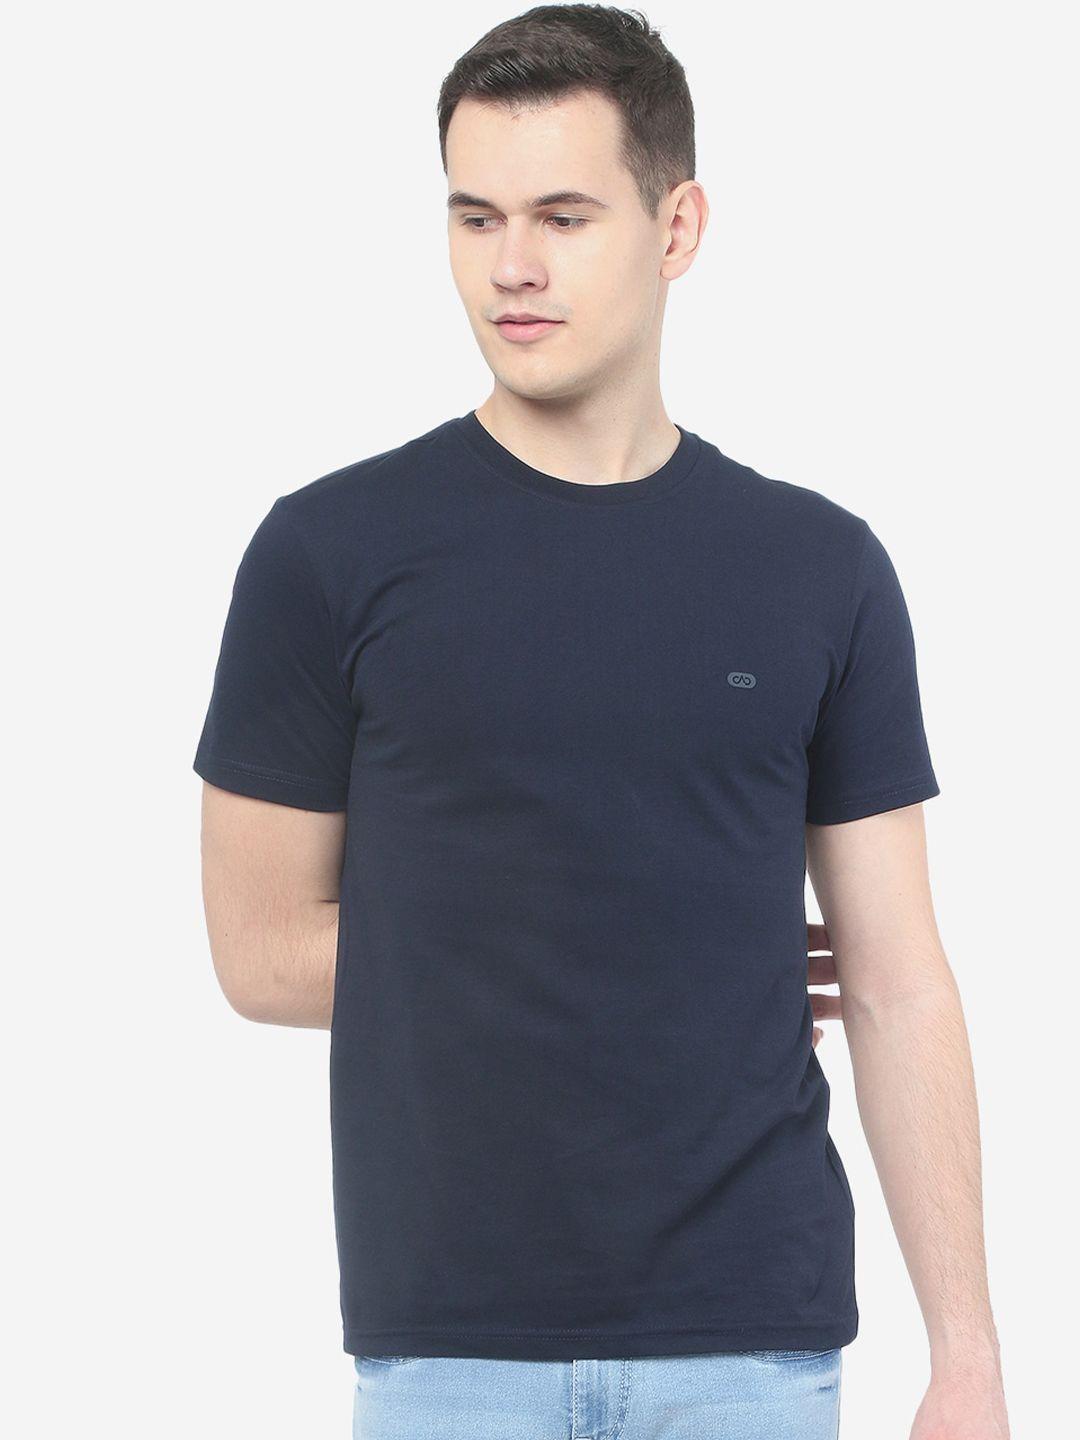 jade blue round neck slim fit cotton t-shirt